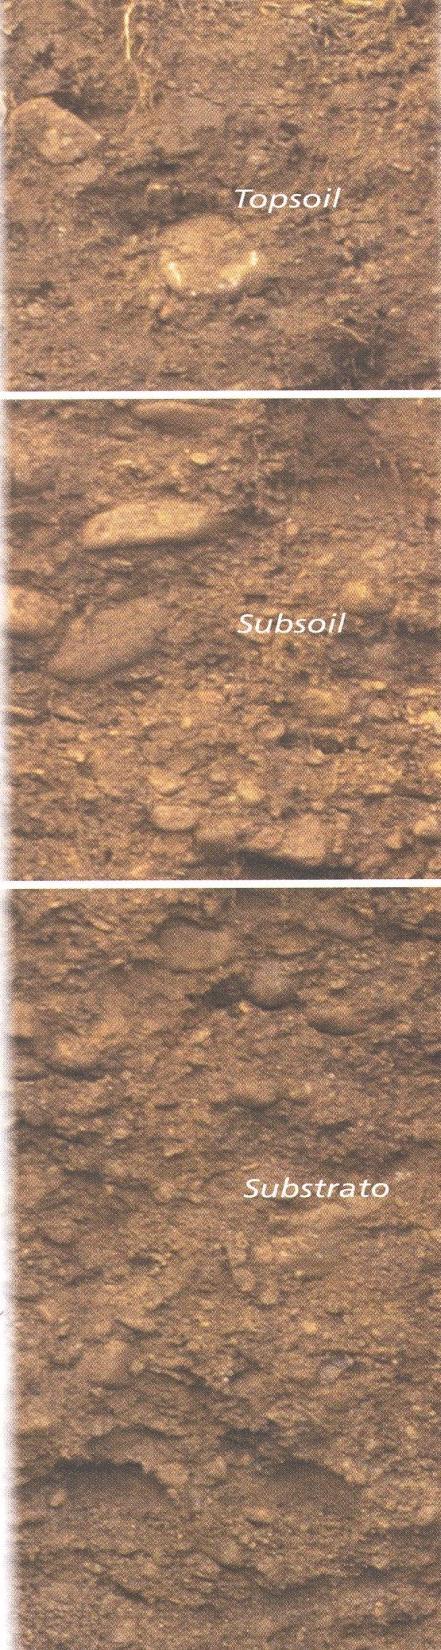 Topsoil: è lo strato di suolo più superficiale spesso 35-40 cm di colore bruno scuro, formato da particelle grossolane è ricco di humus.